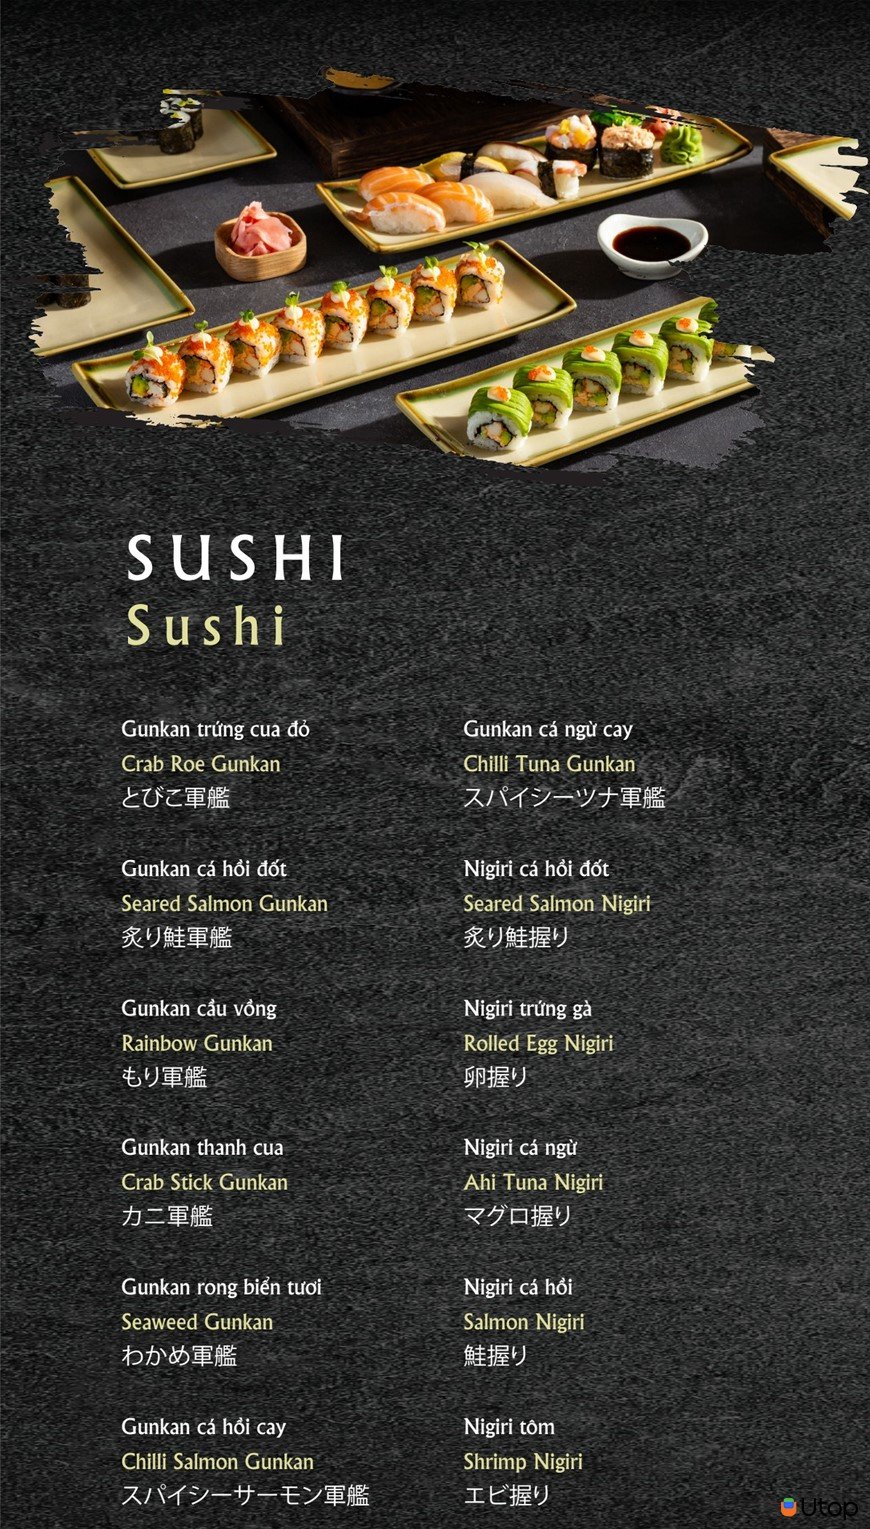 4. Thực đơn tại Nhà hàng Saju Sushi & BBQ có gì? 